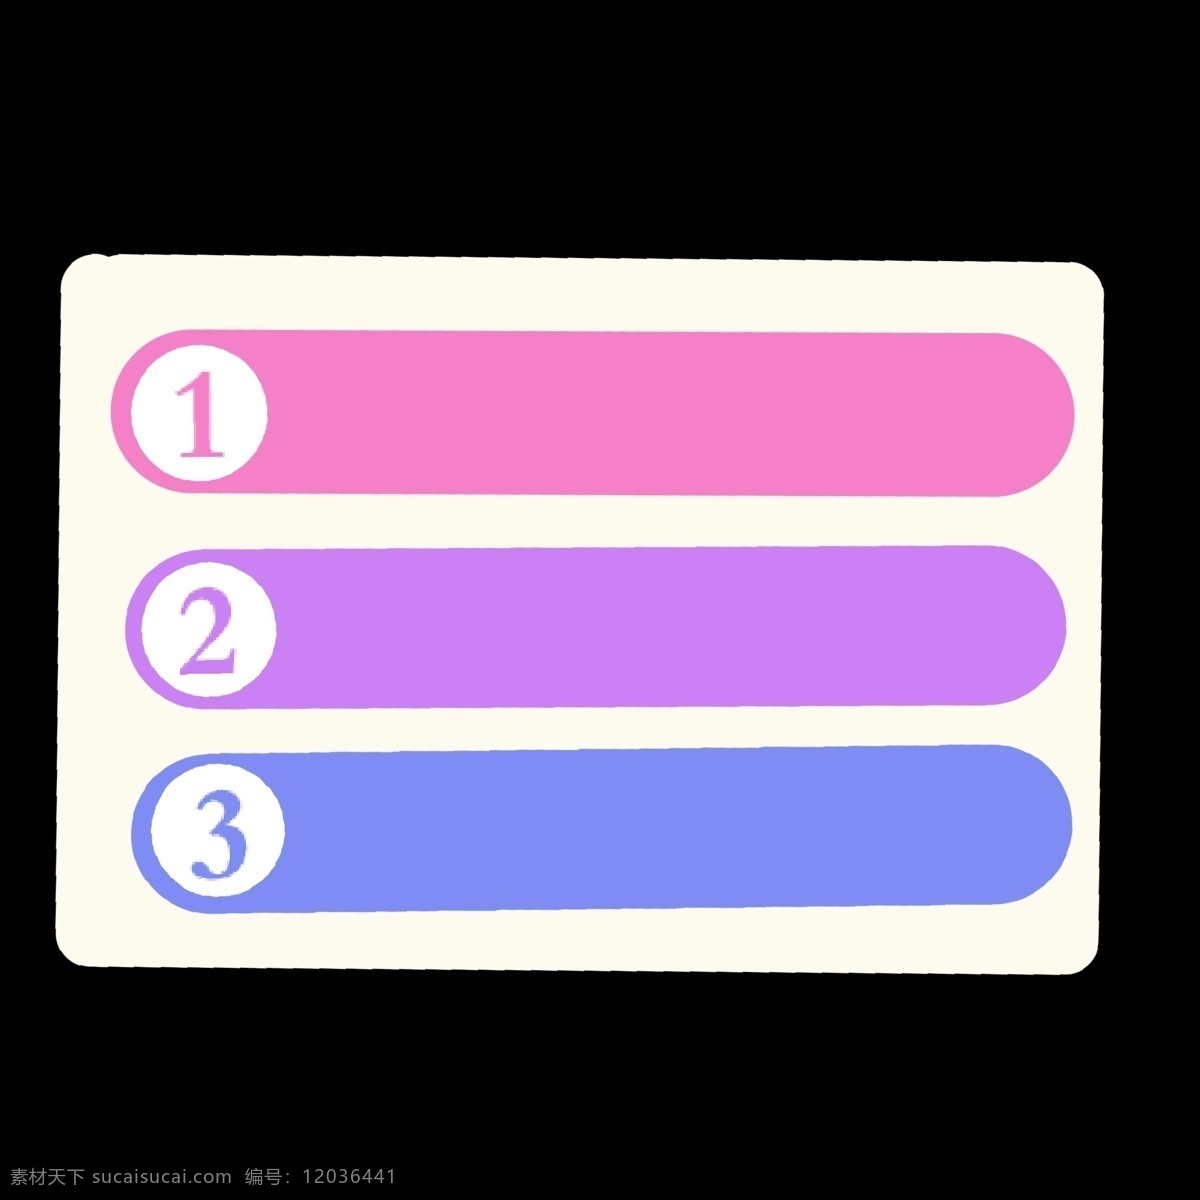 暖 色系 椭圆 条状 分类 暖色系 分类表 分解 分化 分开 ppt专用 卡通 简约 简洁 简单 五颜六色